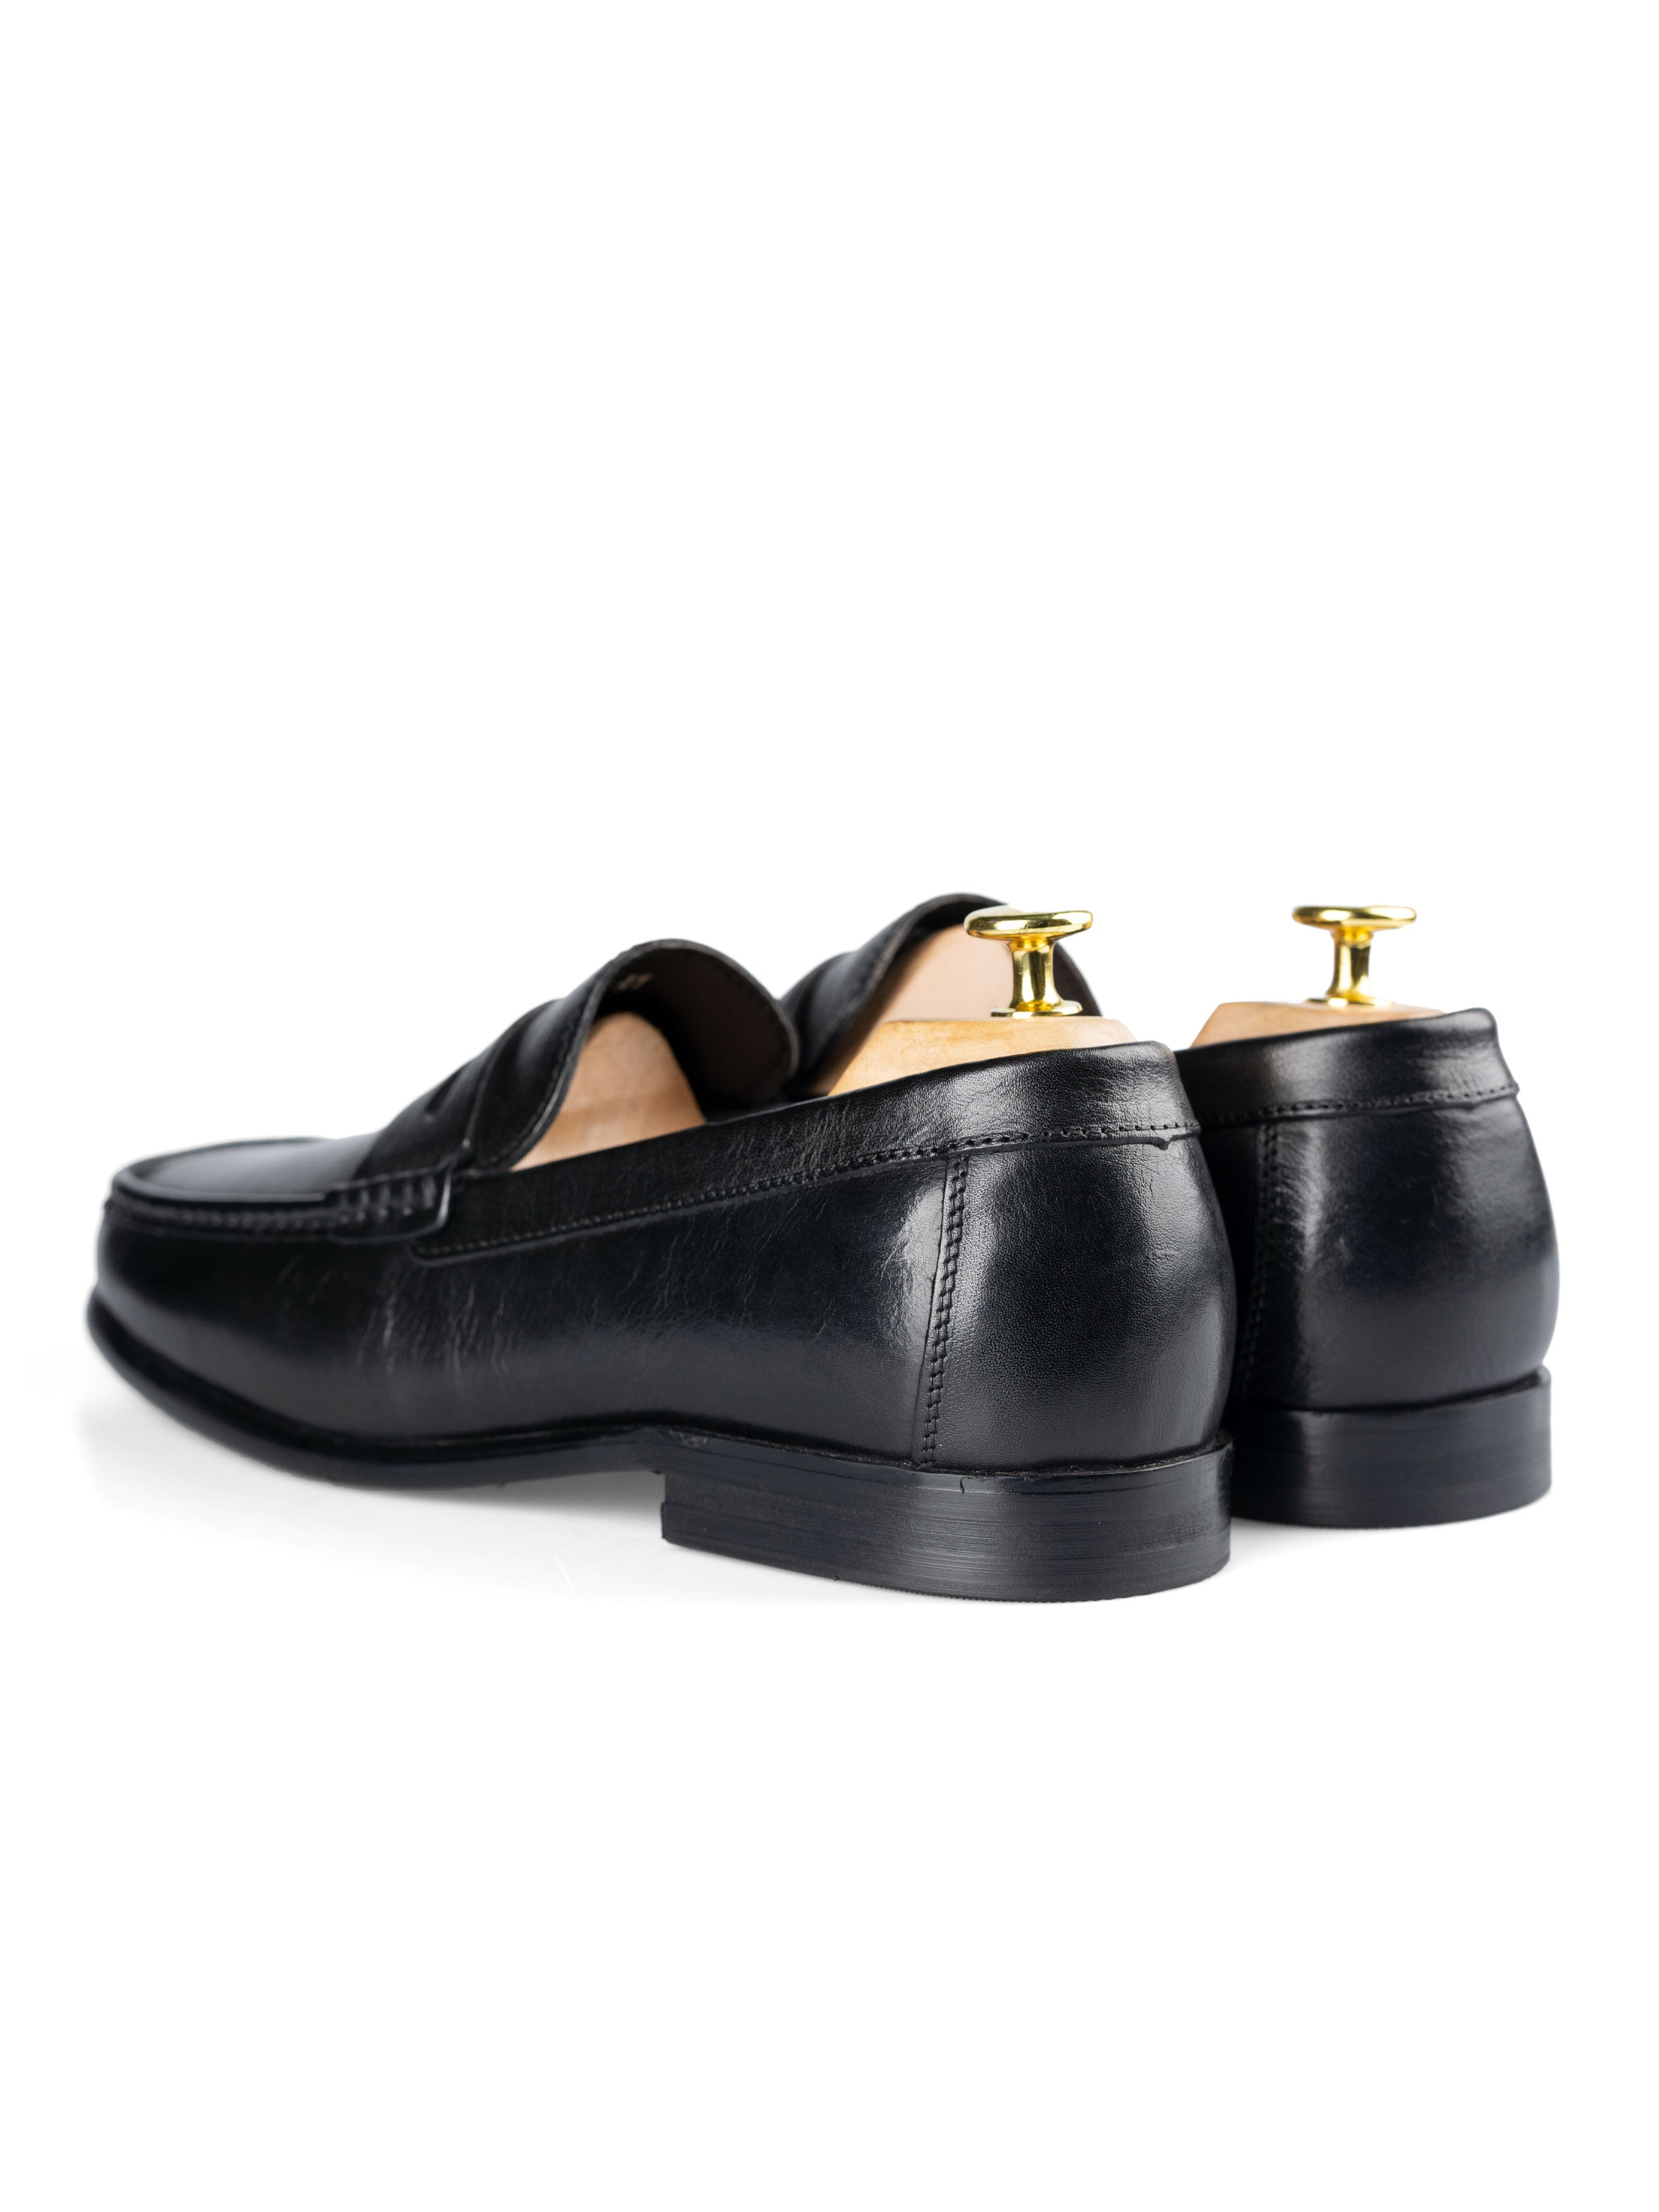 Penny Moccasin Loafer - Solid Black - Zeve Shoes